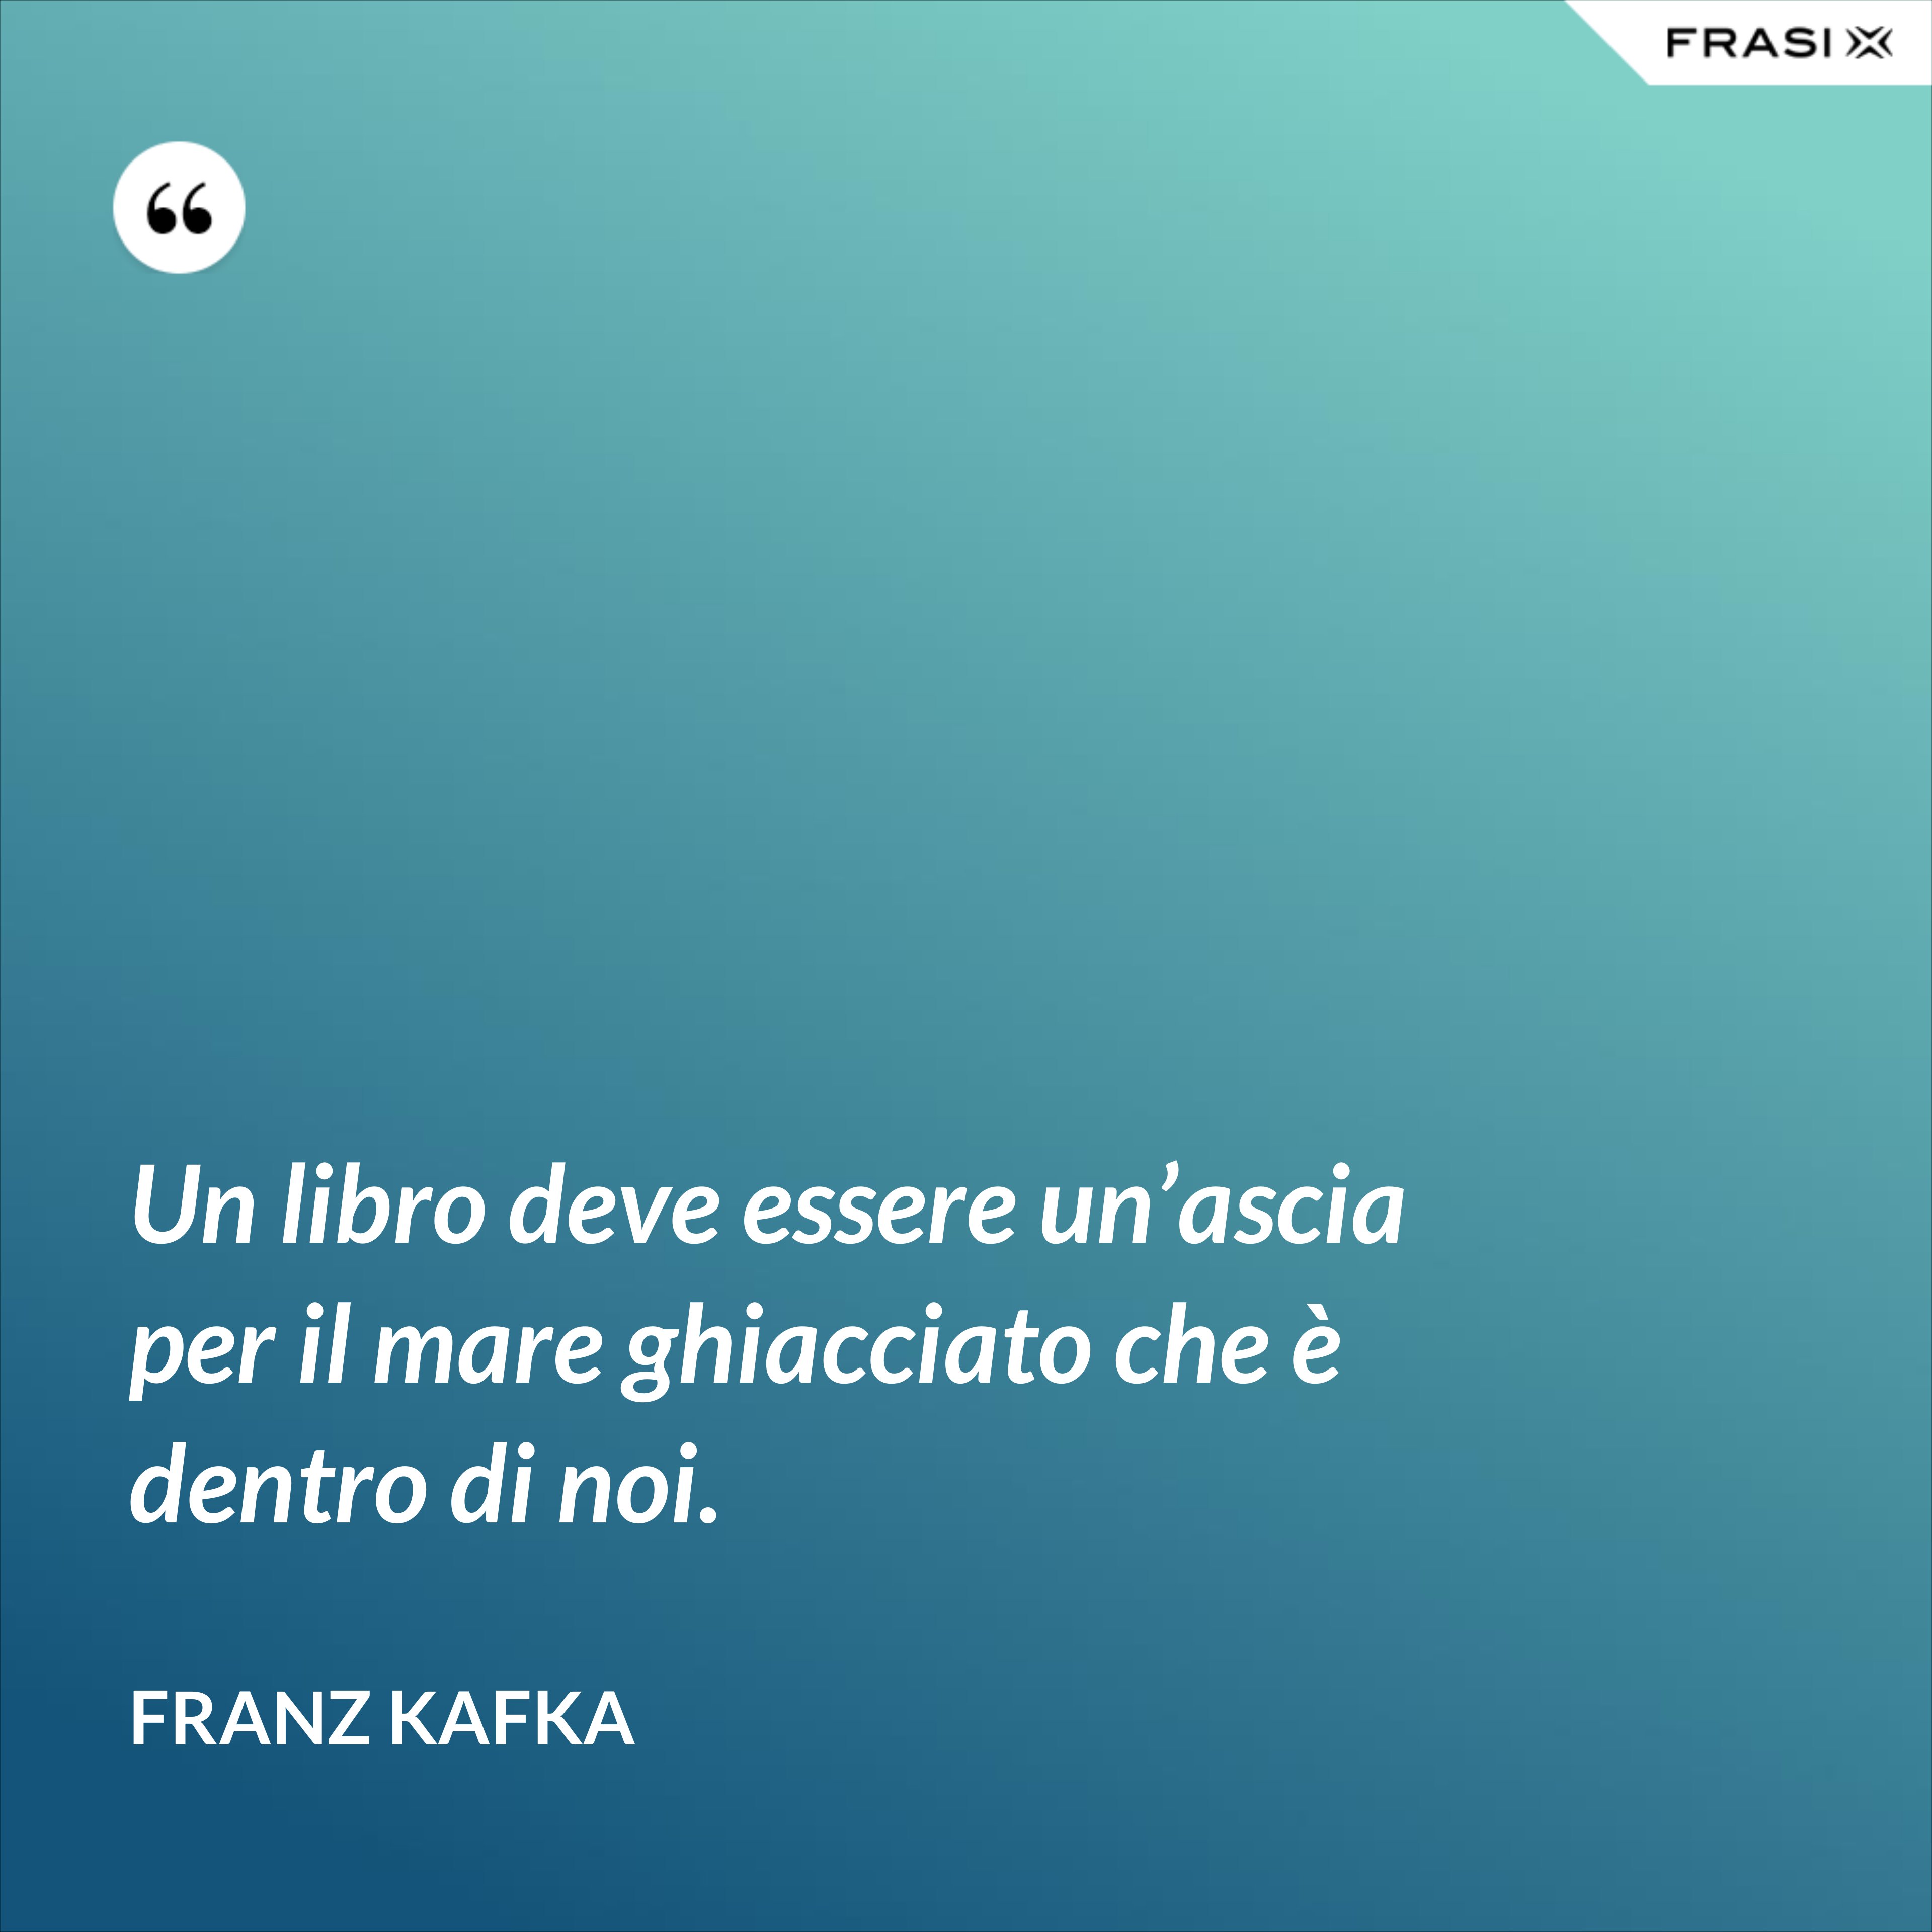 Un libro deve essere un’ascia per il mare ghiacciato che è dentro di noi. - Franz Kafka